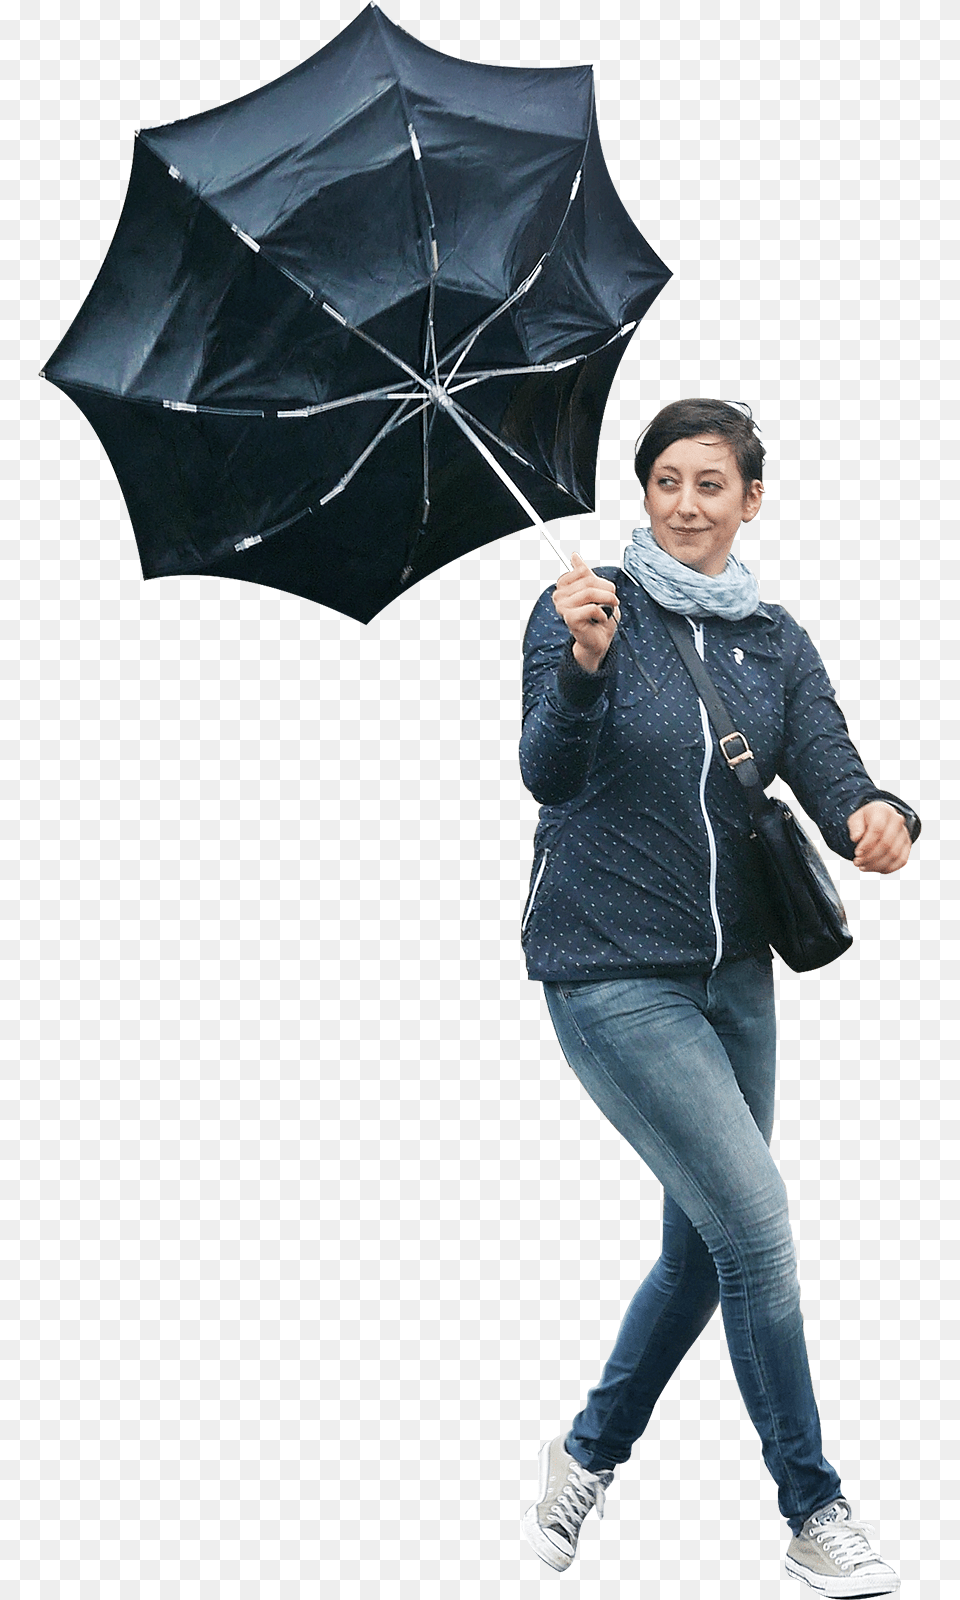 Umbrella, Coat, Clothing, Woman, Person Png Image